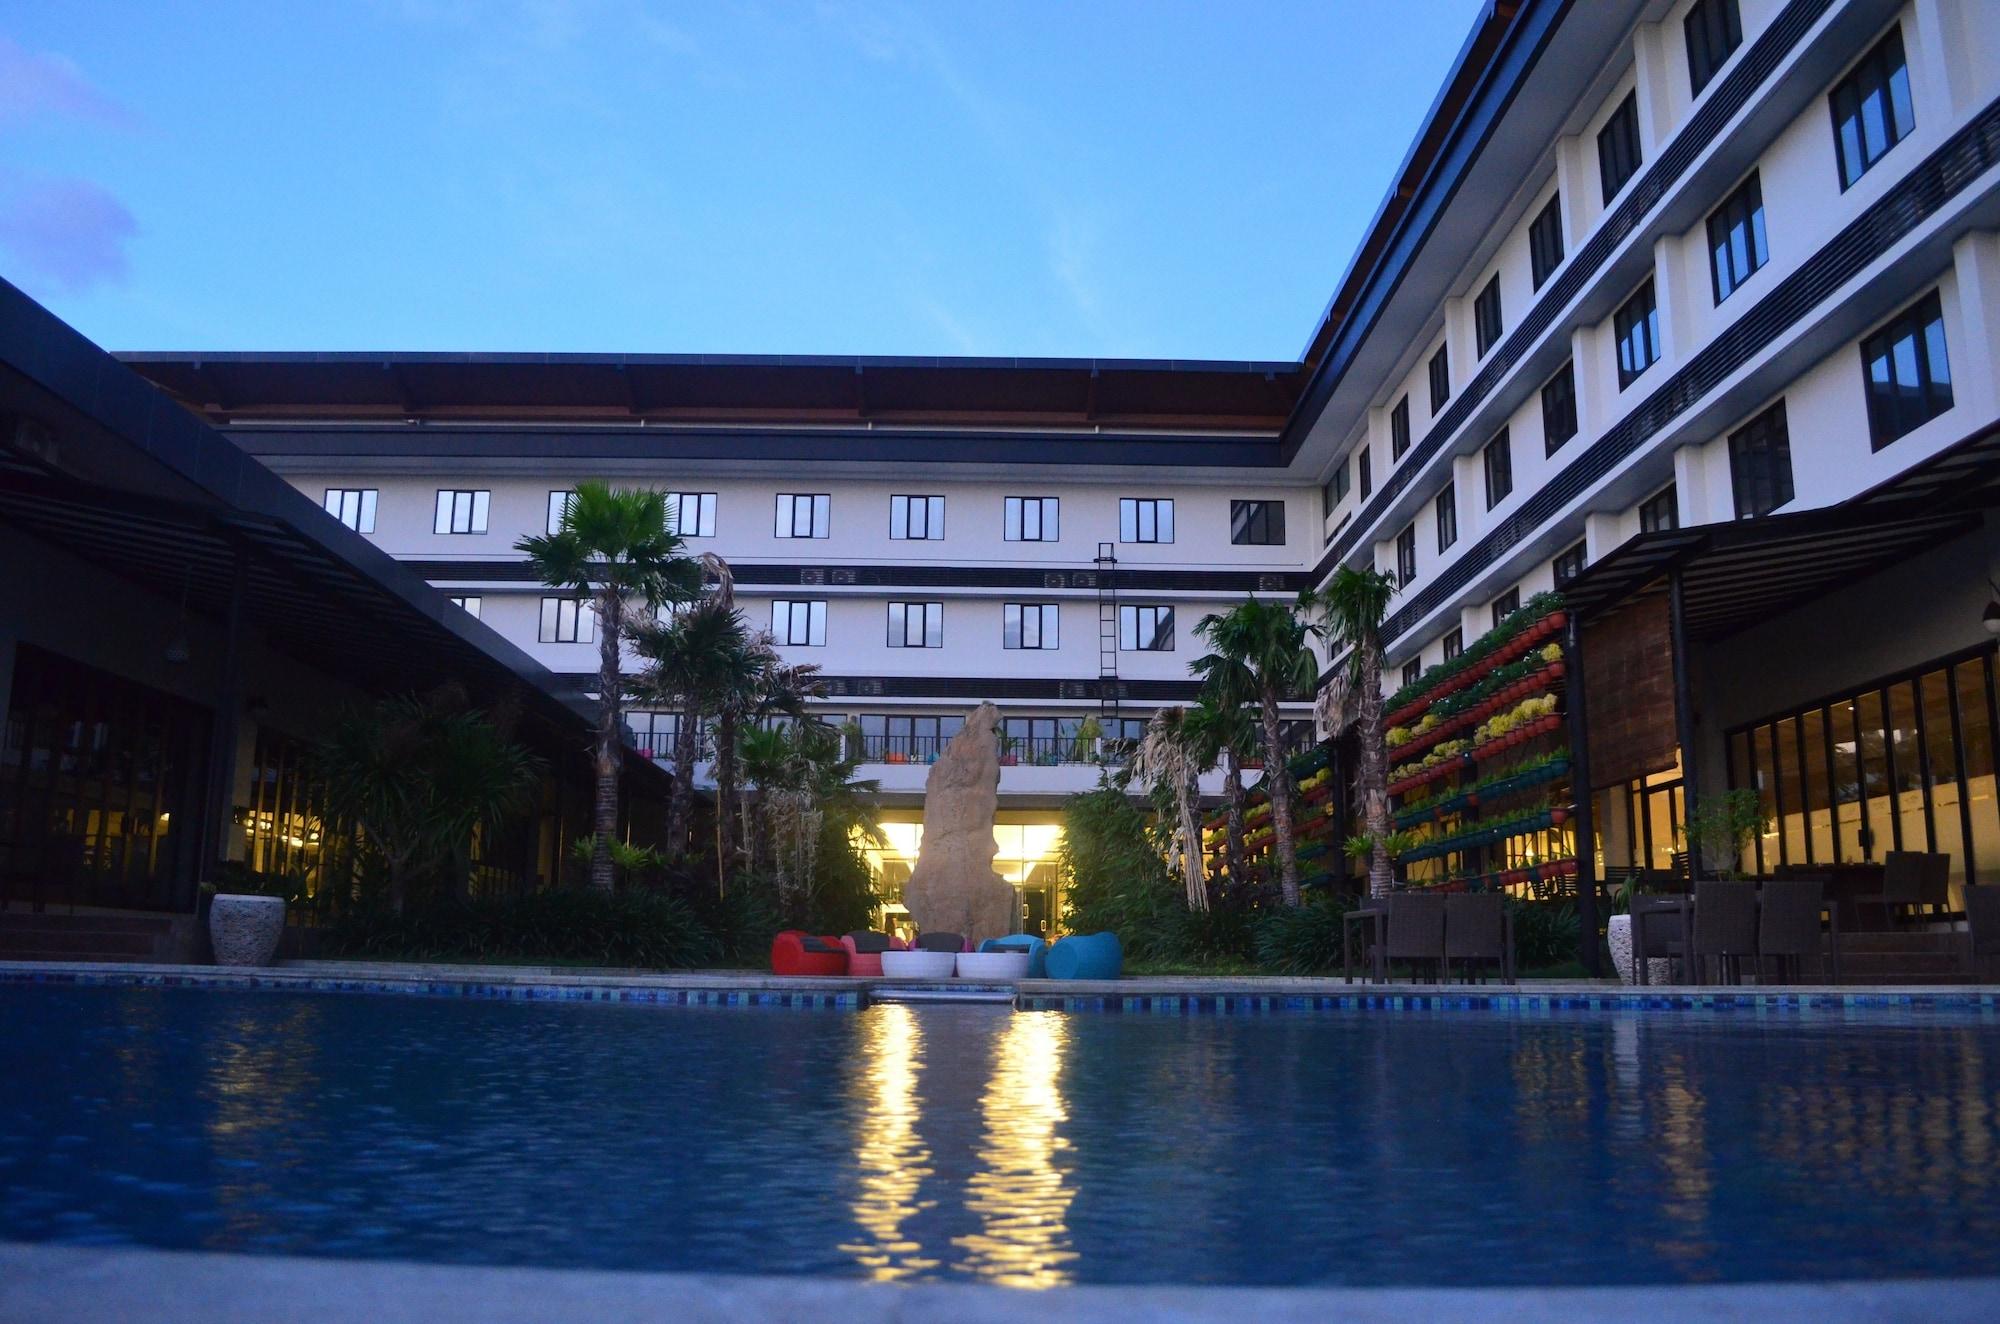 Neo Eltari Kupang By Aston Hotel Kültér fotó